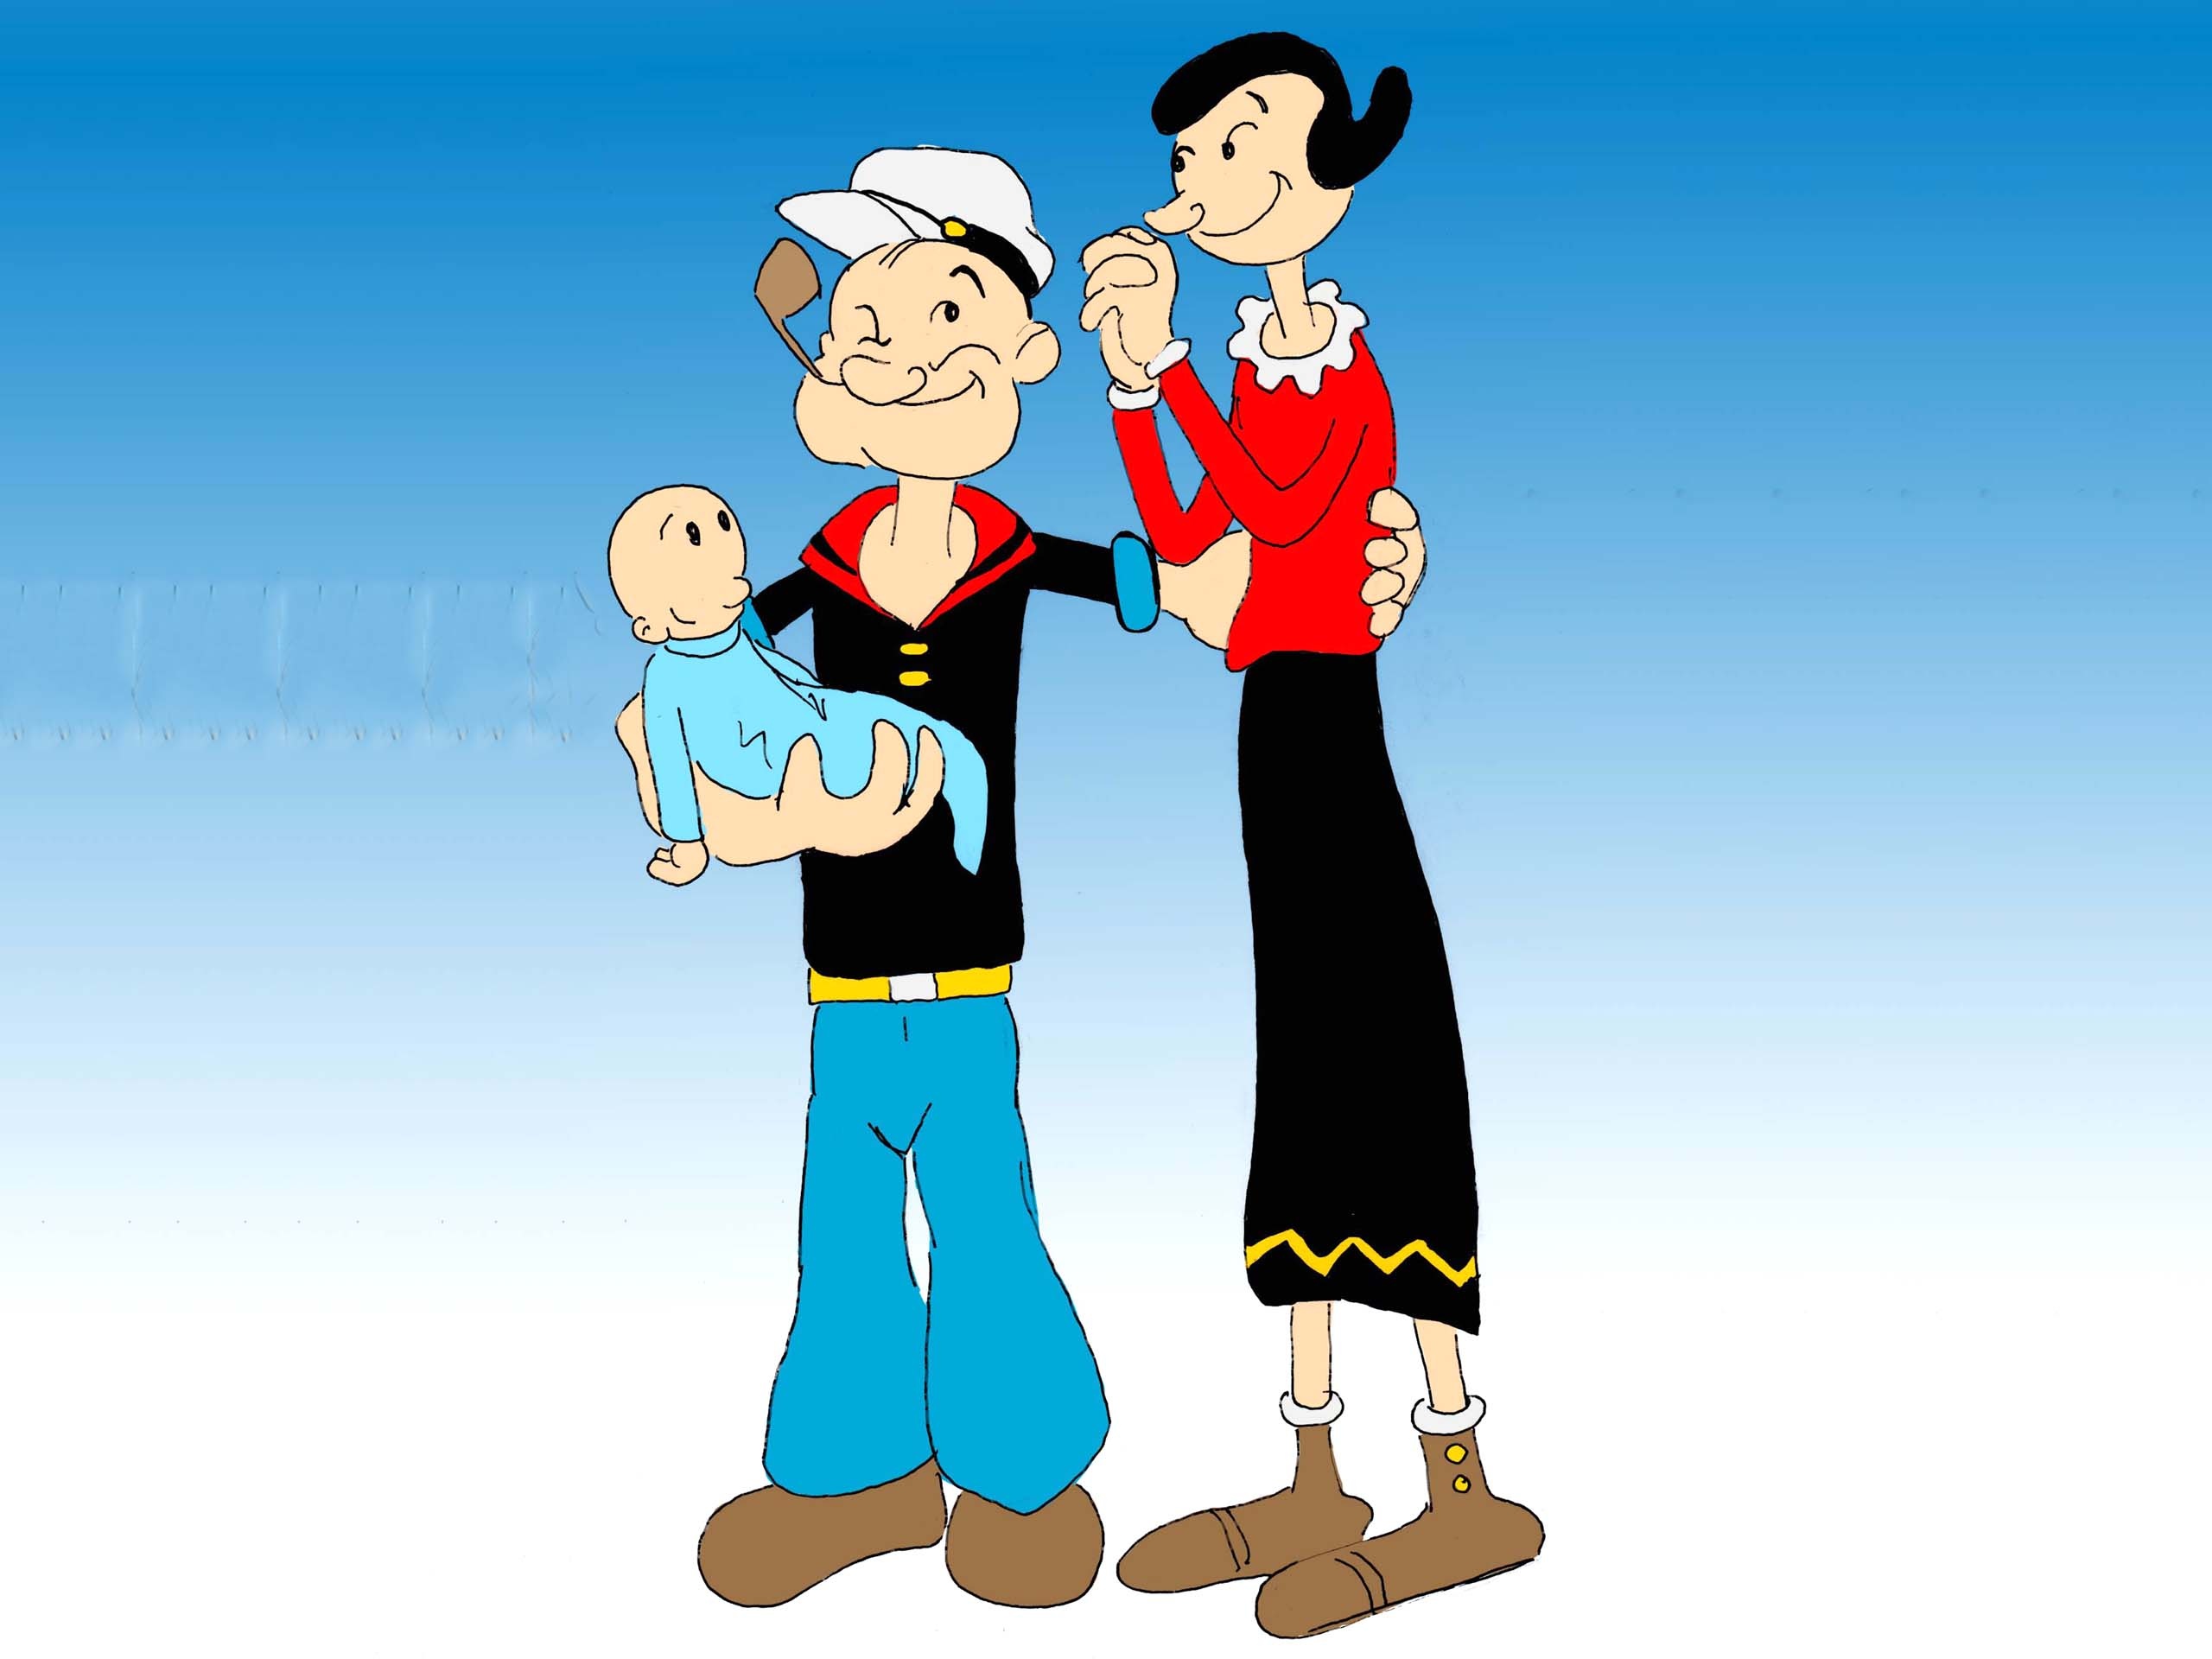 Popeye the Sailor, High-definition clipart, Best artwork, Cartoon, 2560x1920 HD Desktop